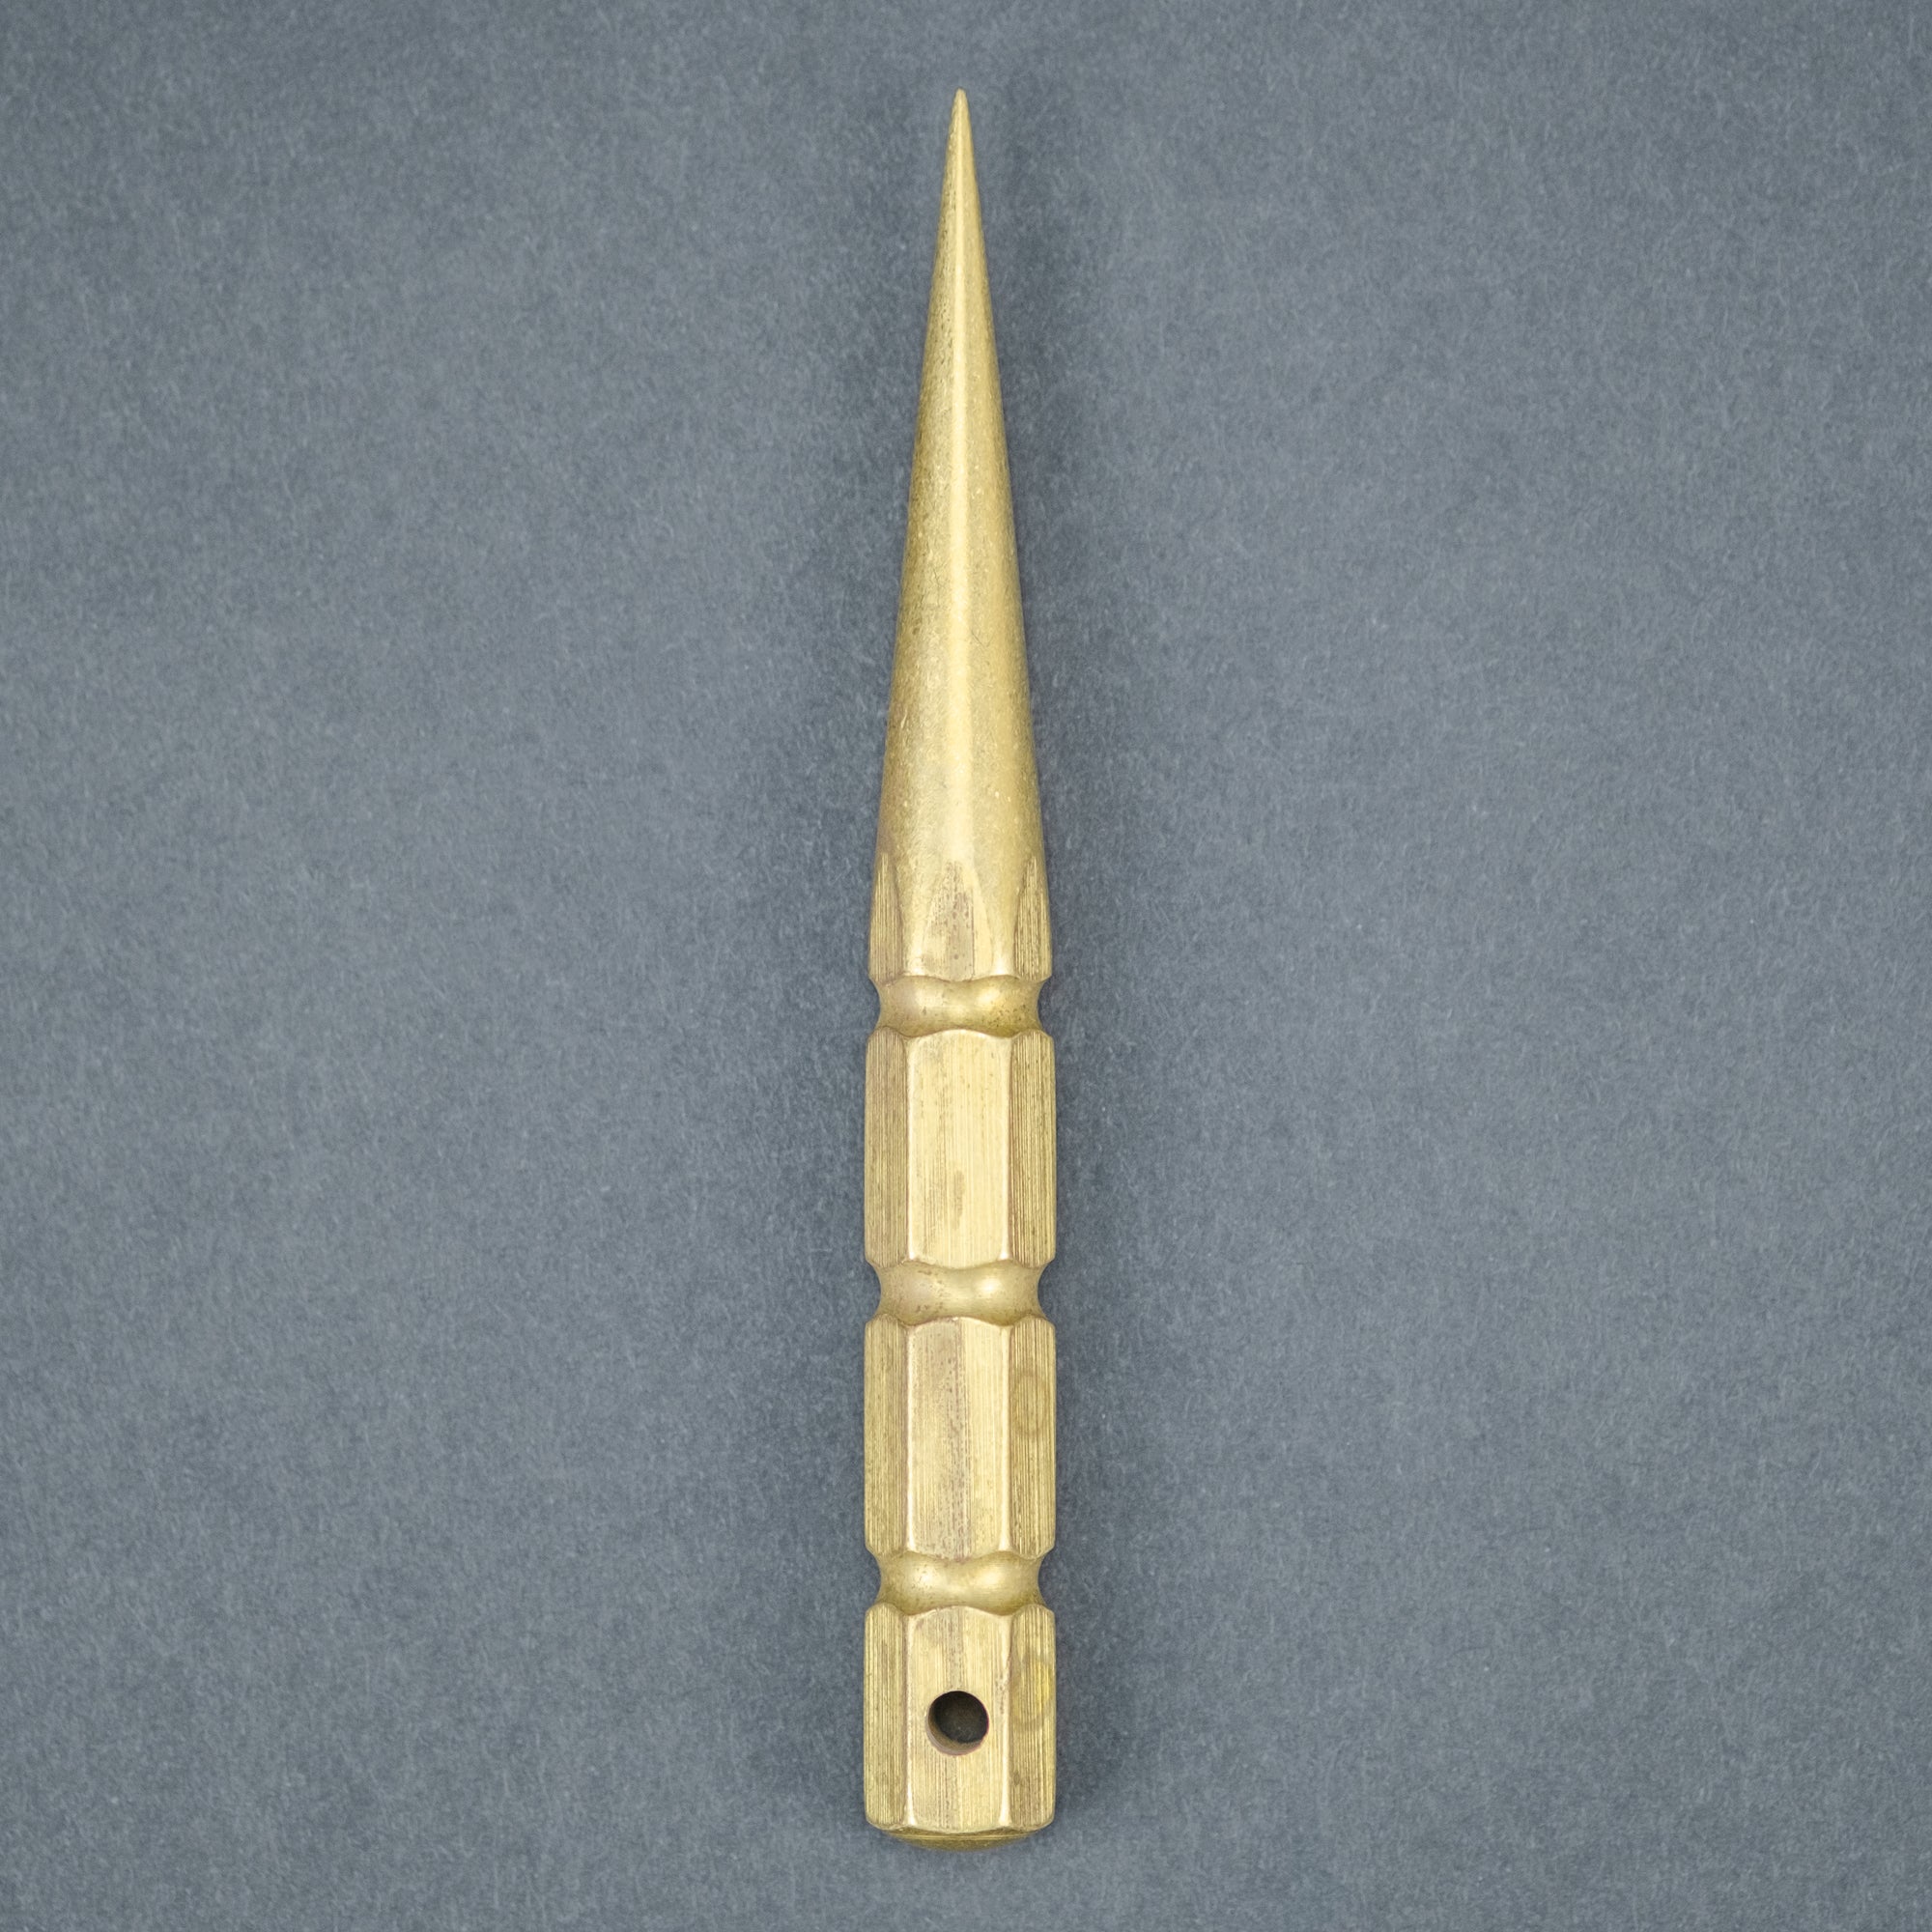 Marlin Spike - Brass - Ø 12 mm